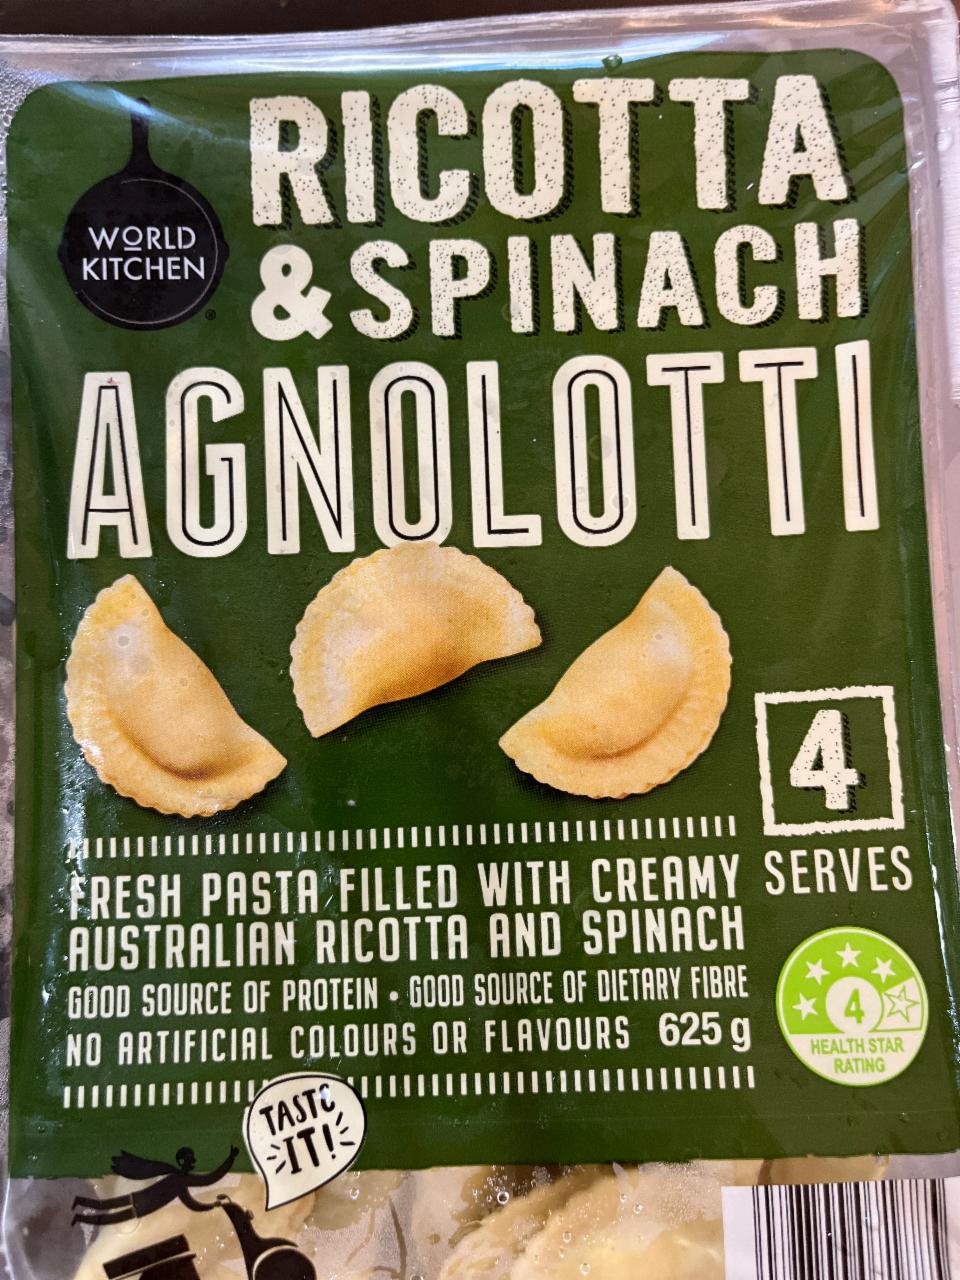 Fotografie - Ricotta & spinach agnolotti World kitchen